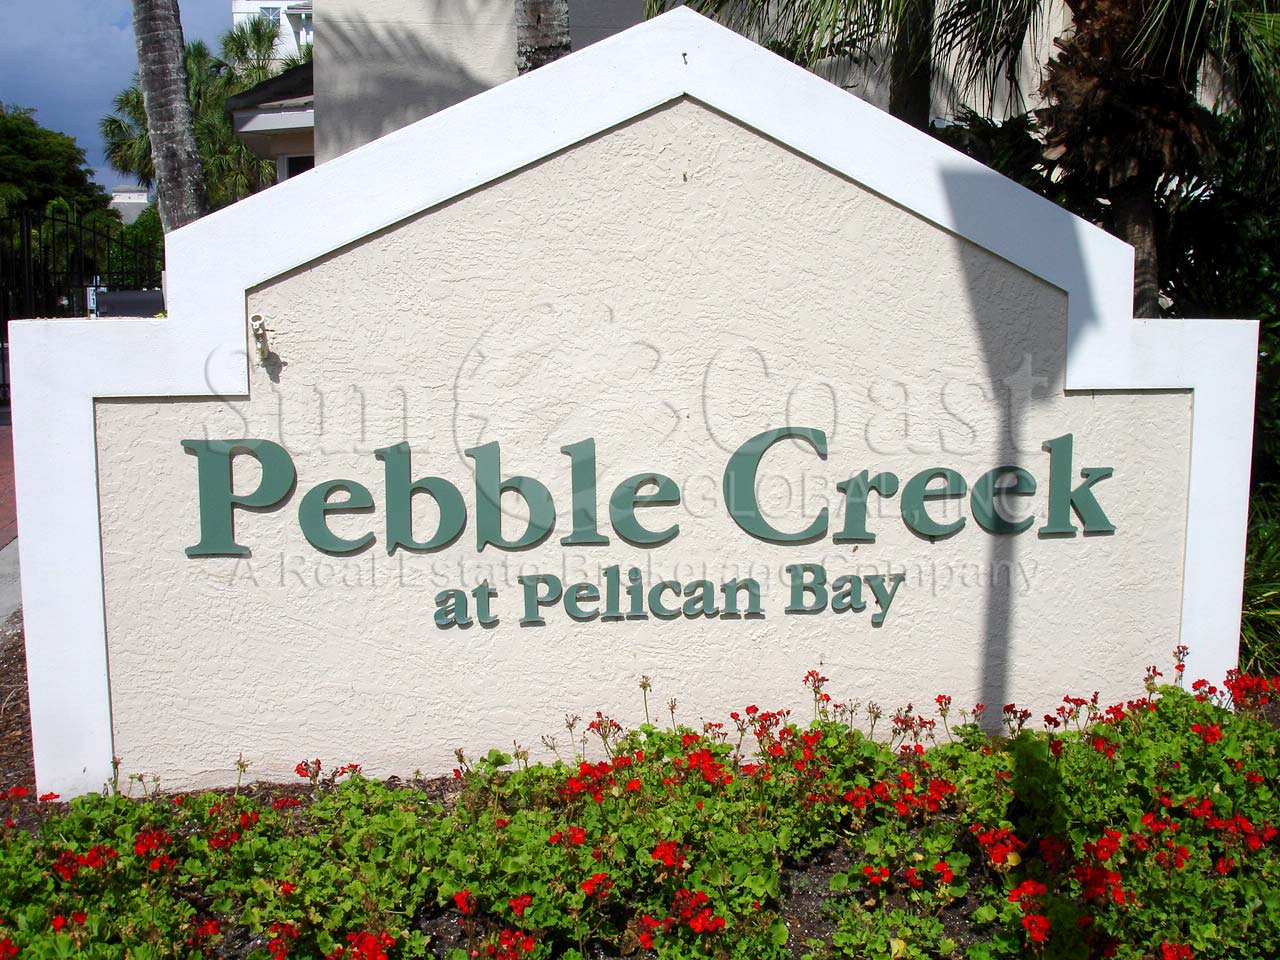 Pebble Creek at Pelican Bay sign